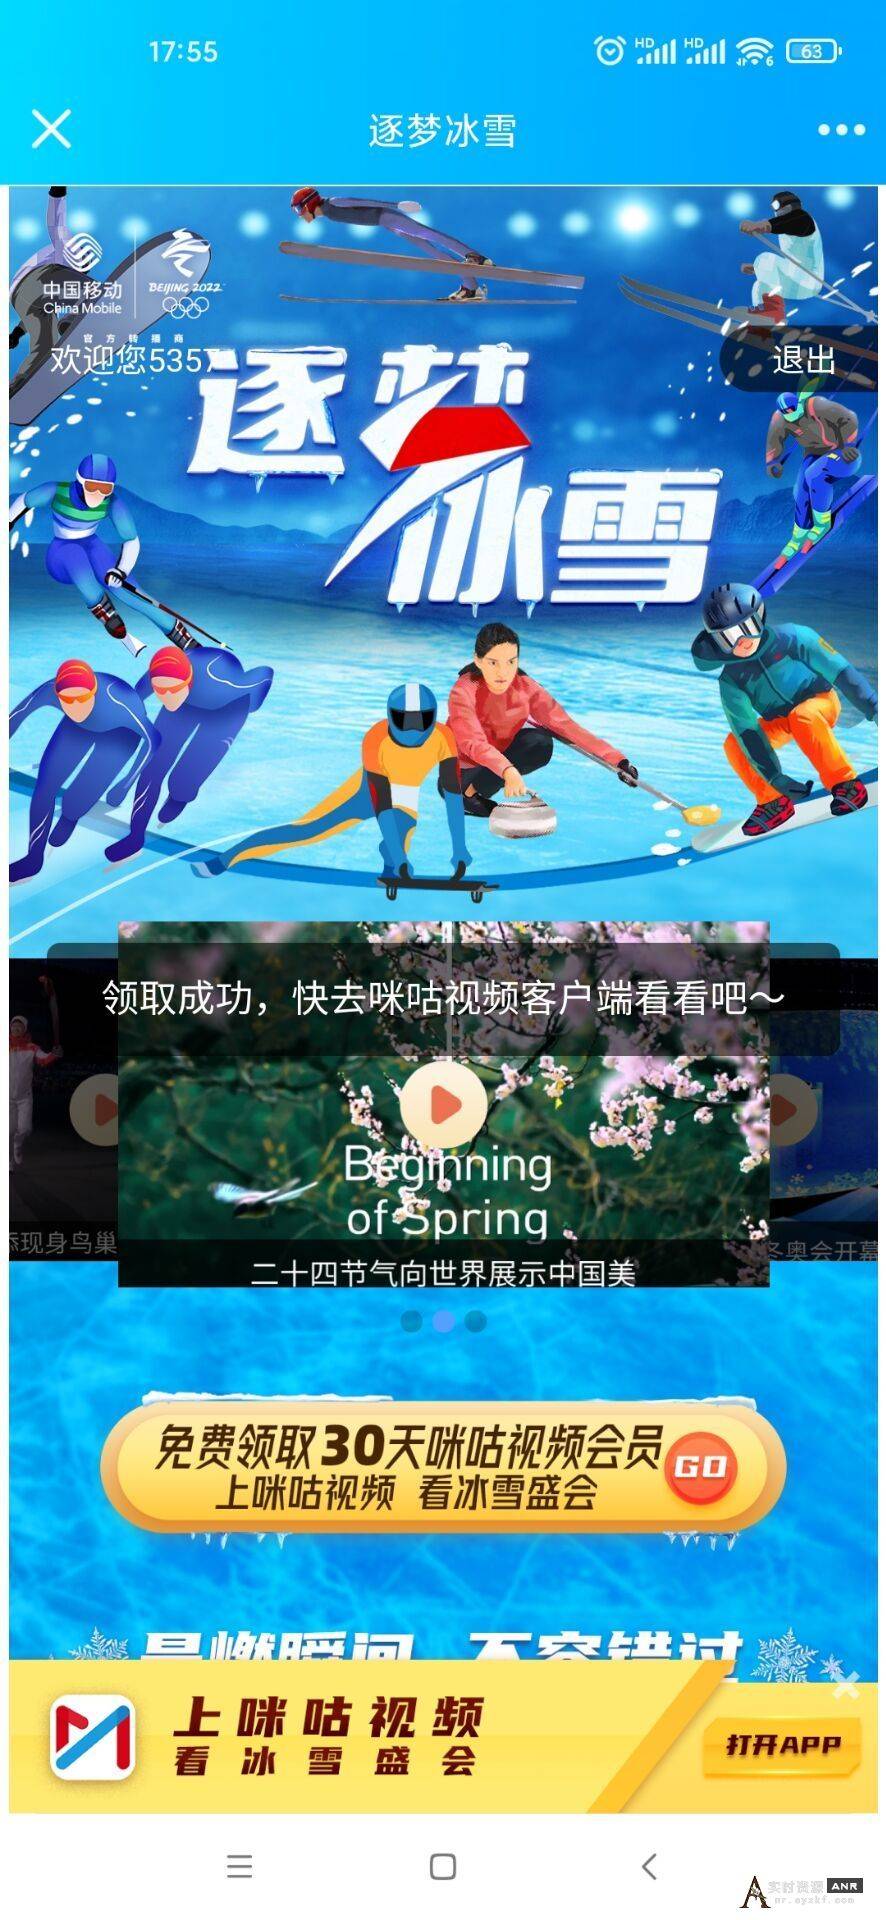 【看北京冬奥会必备】免费领取咪咕视频30天会员秒到账